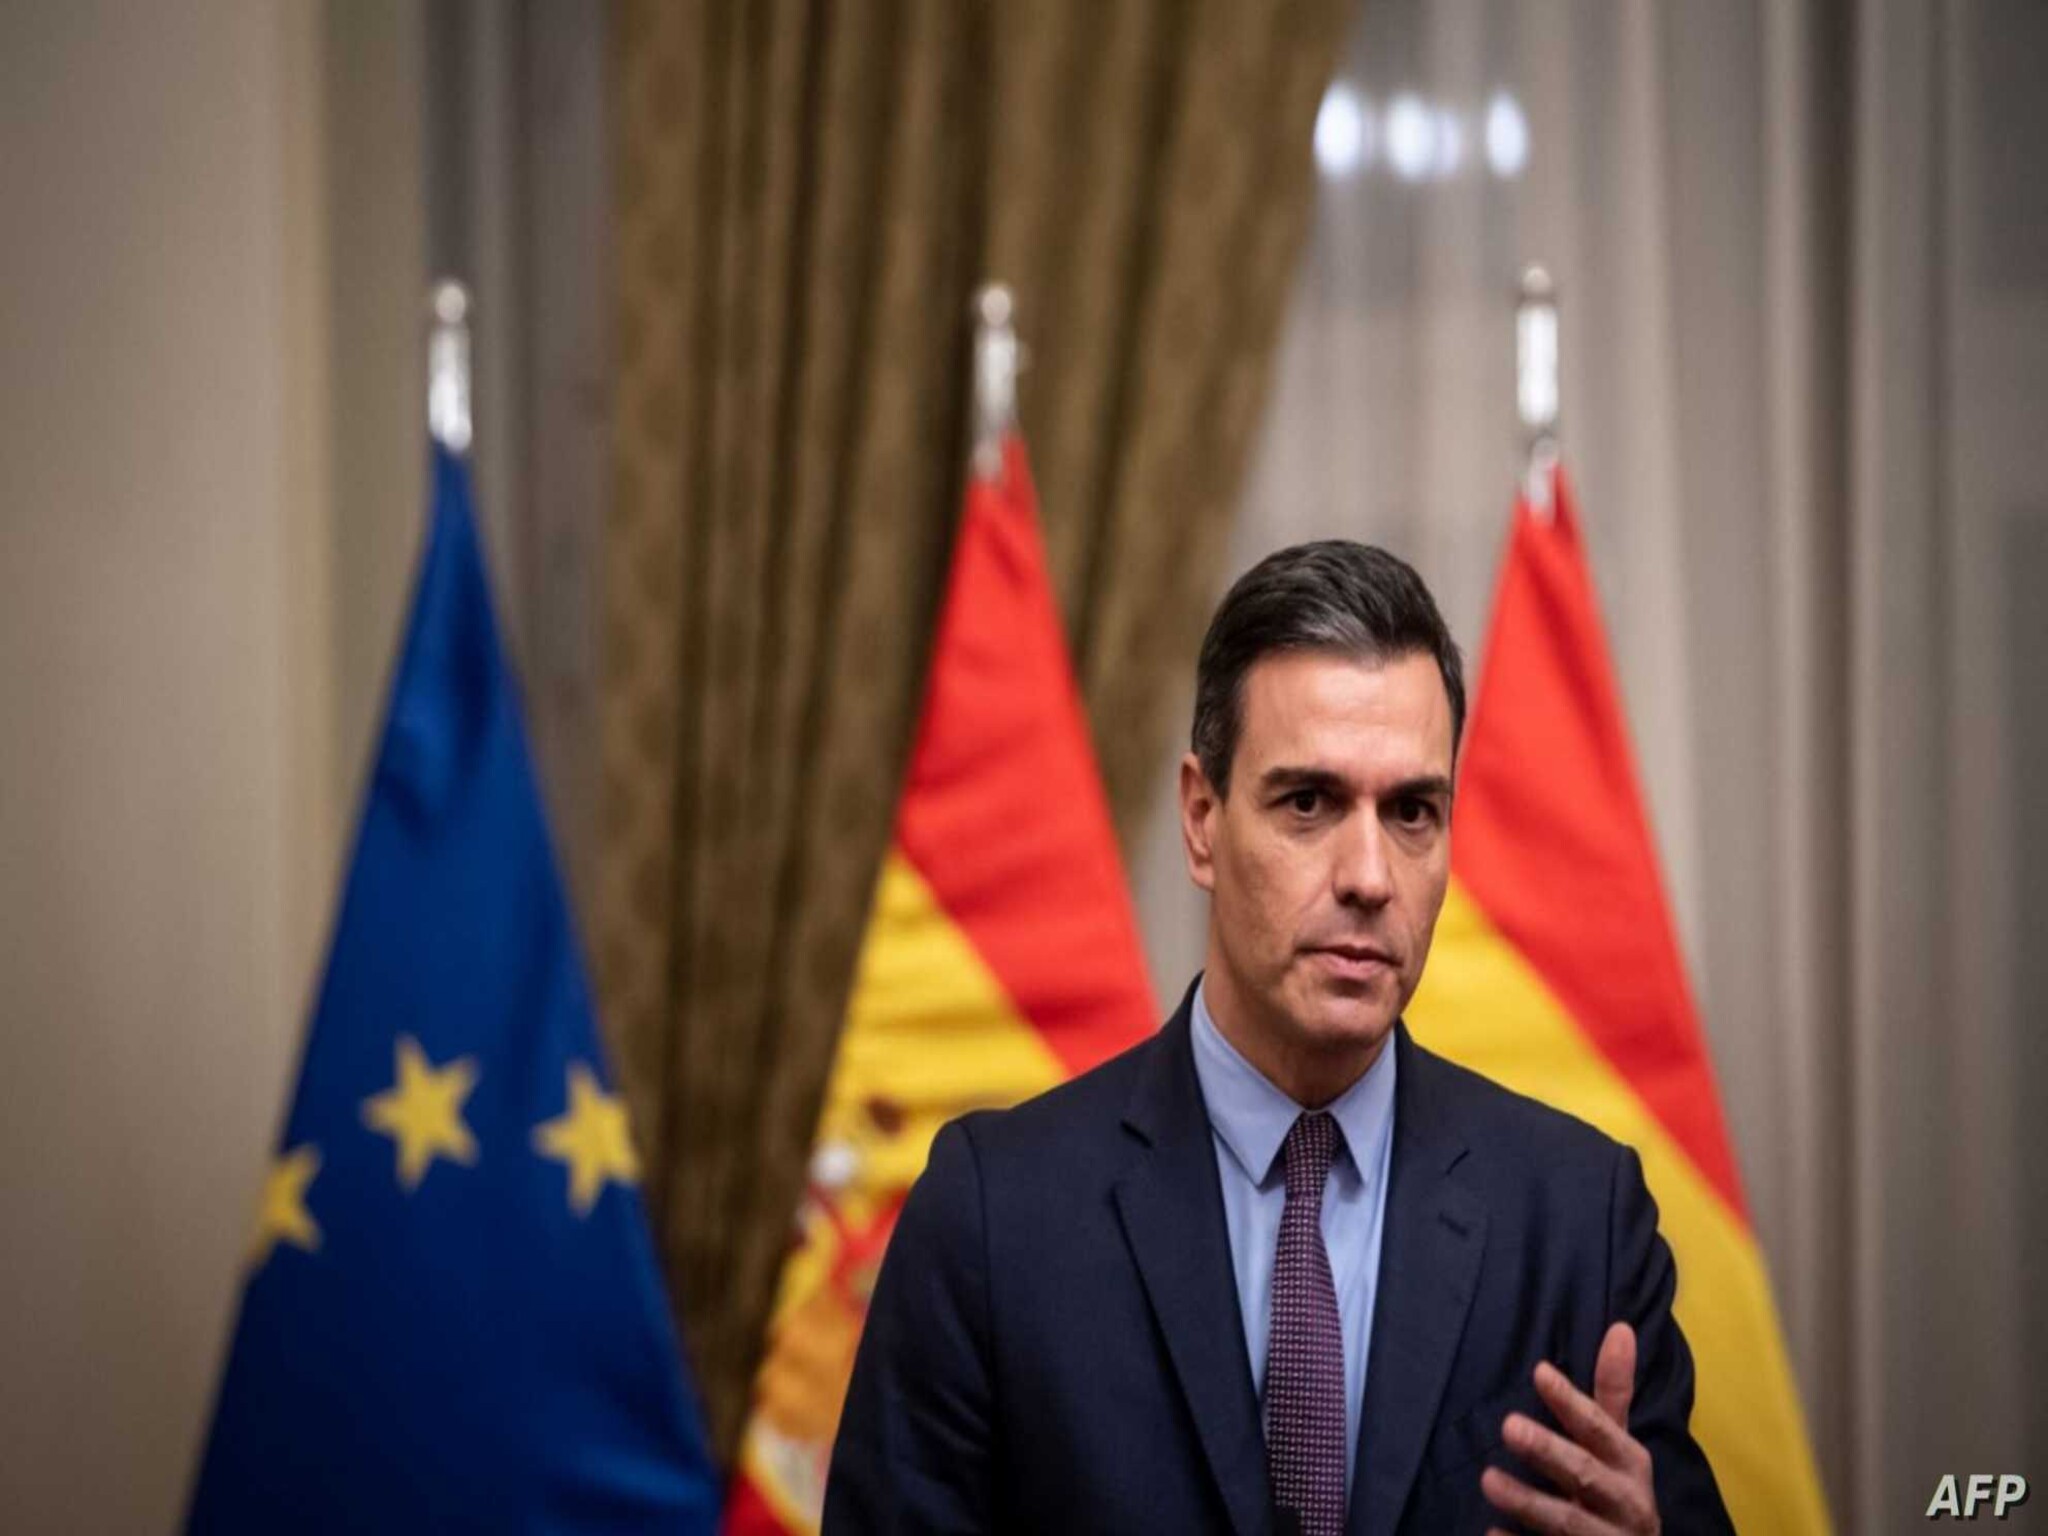 رئيس الوزراء الإسباني يعتزم العمل من أجل الأعتراف بـ "الدولة الفلسطينية"